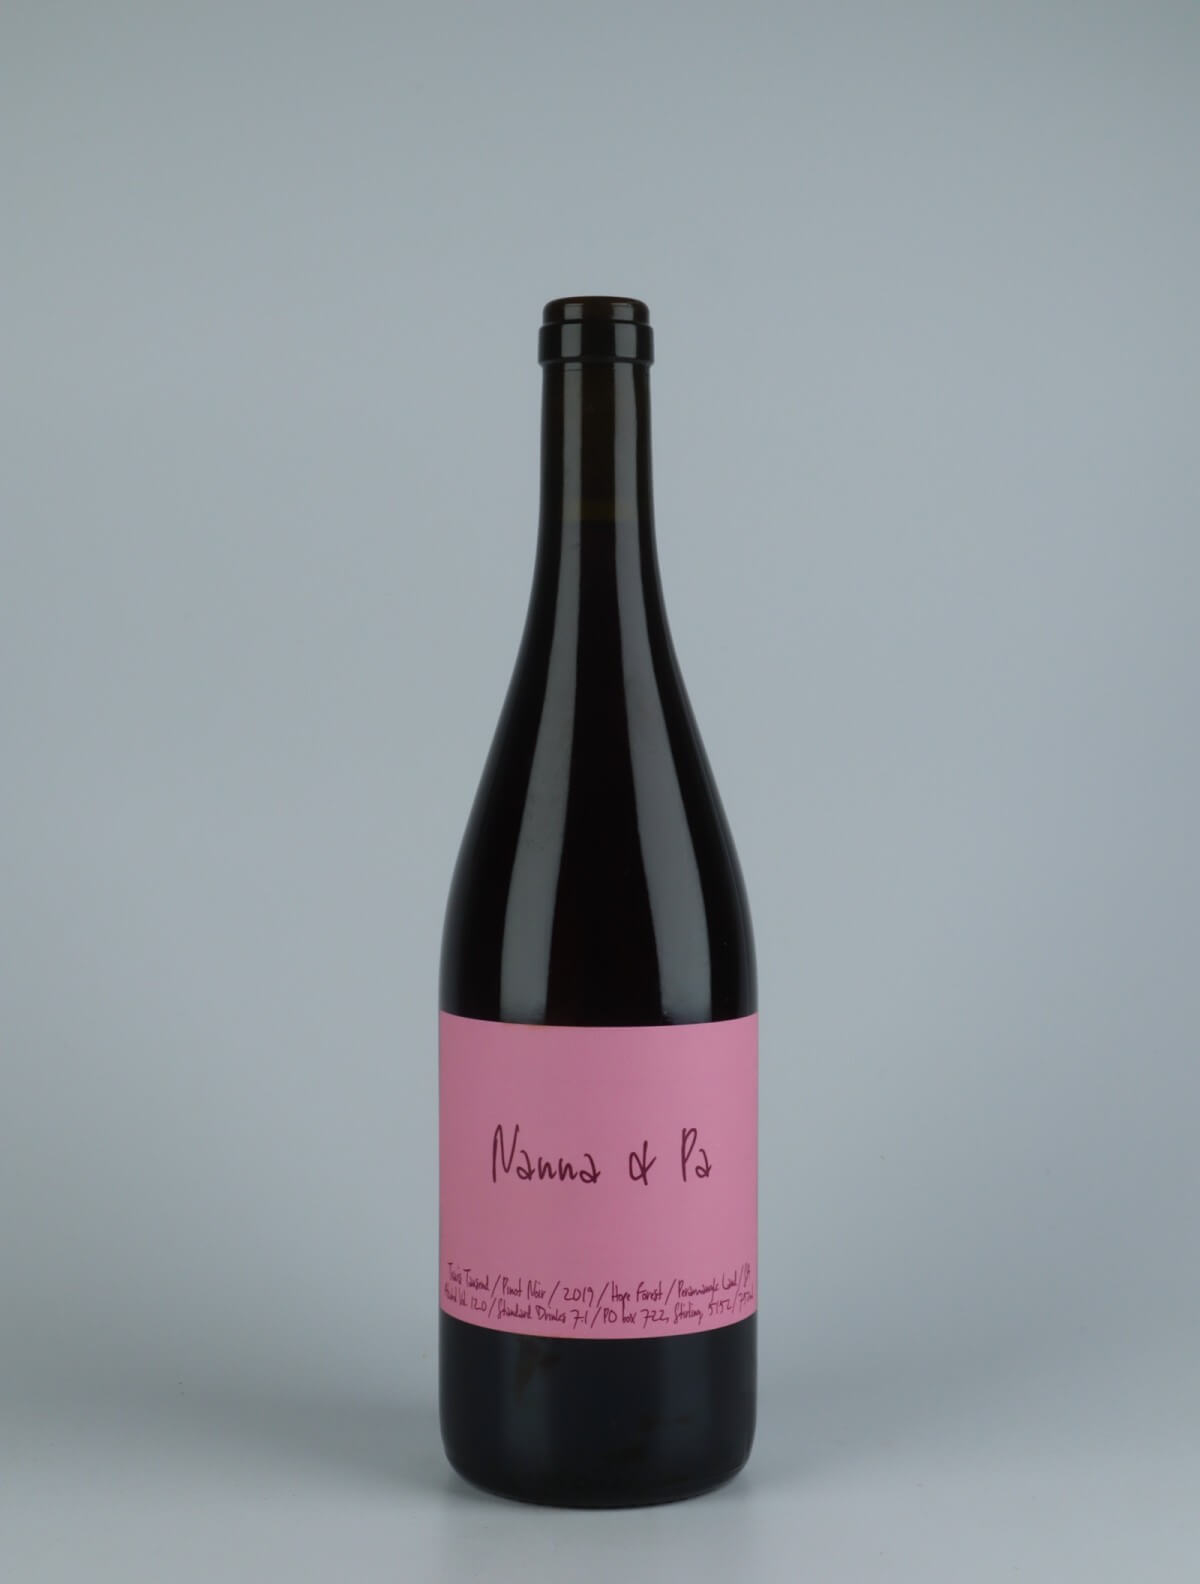 En flaske 2019 Nanna & Pa Pinot Noir Rødvin fra Travis Tausend, Adelaide Hills i Australien